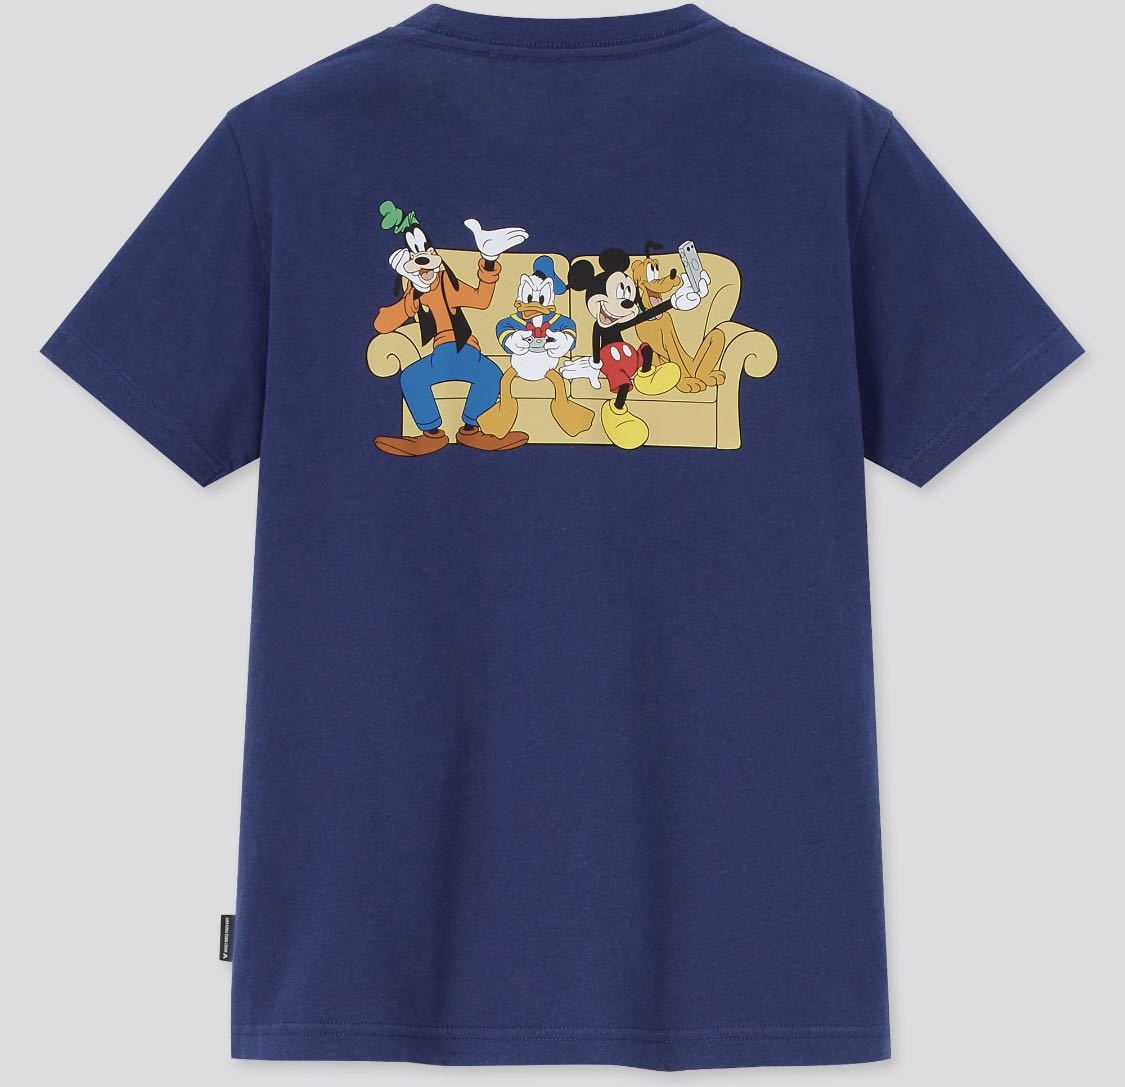 Uniqlo ディズニー 110 ミッキー 半袖tシャツ 春のコレクション 半袖tシャツ